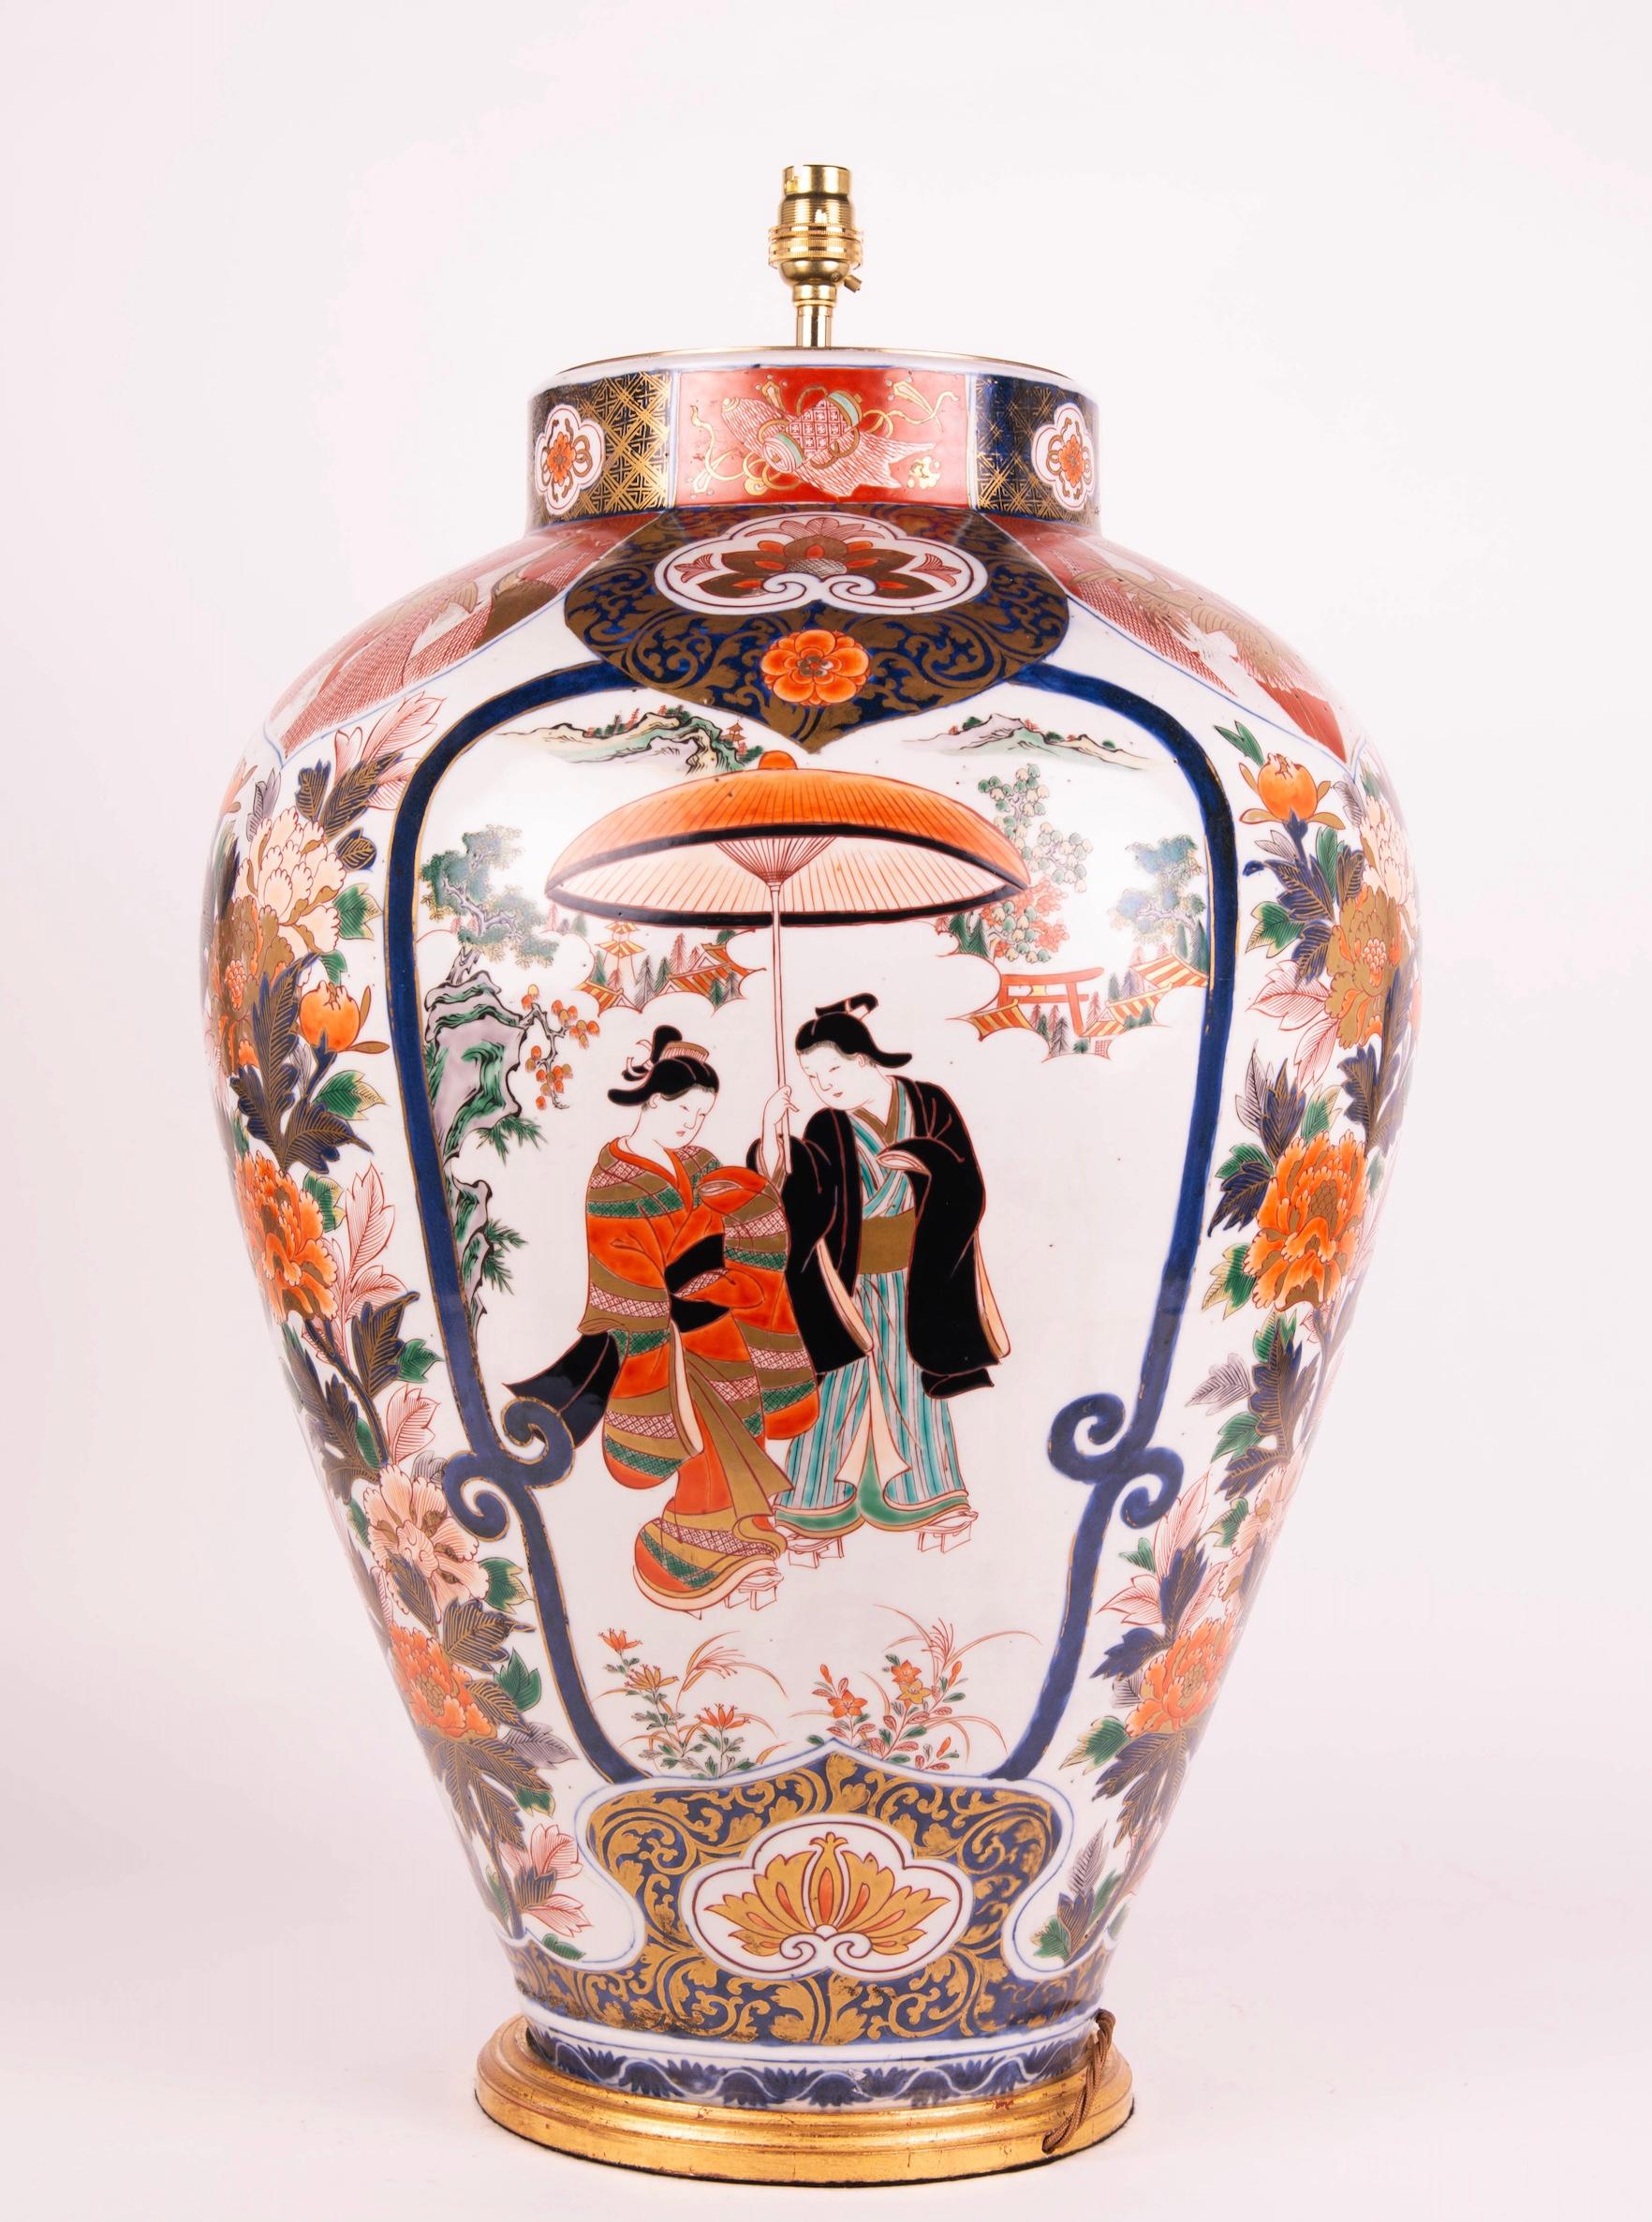 Superbe très grand vase Imari japonais du XIXe siècle, de forme balustre, décoré dans la palette typique d'Imari de rouges et de bleus ferreux avec des rehauts de dorure, mais aussi de noirs et de verts, sur un fond principalement blanc, avec des